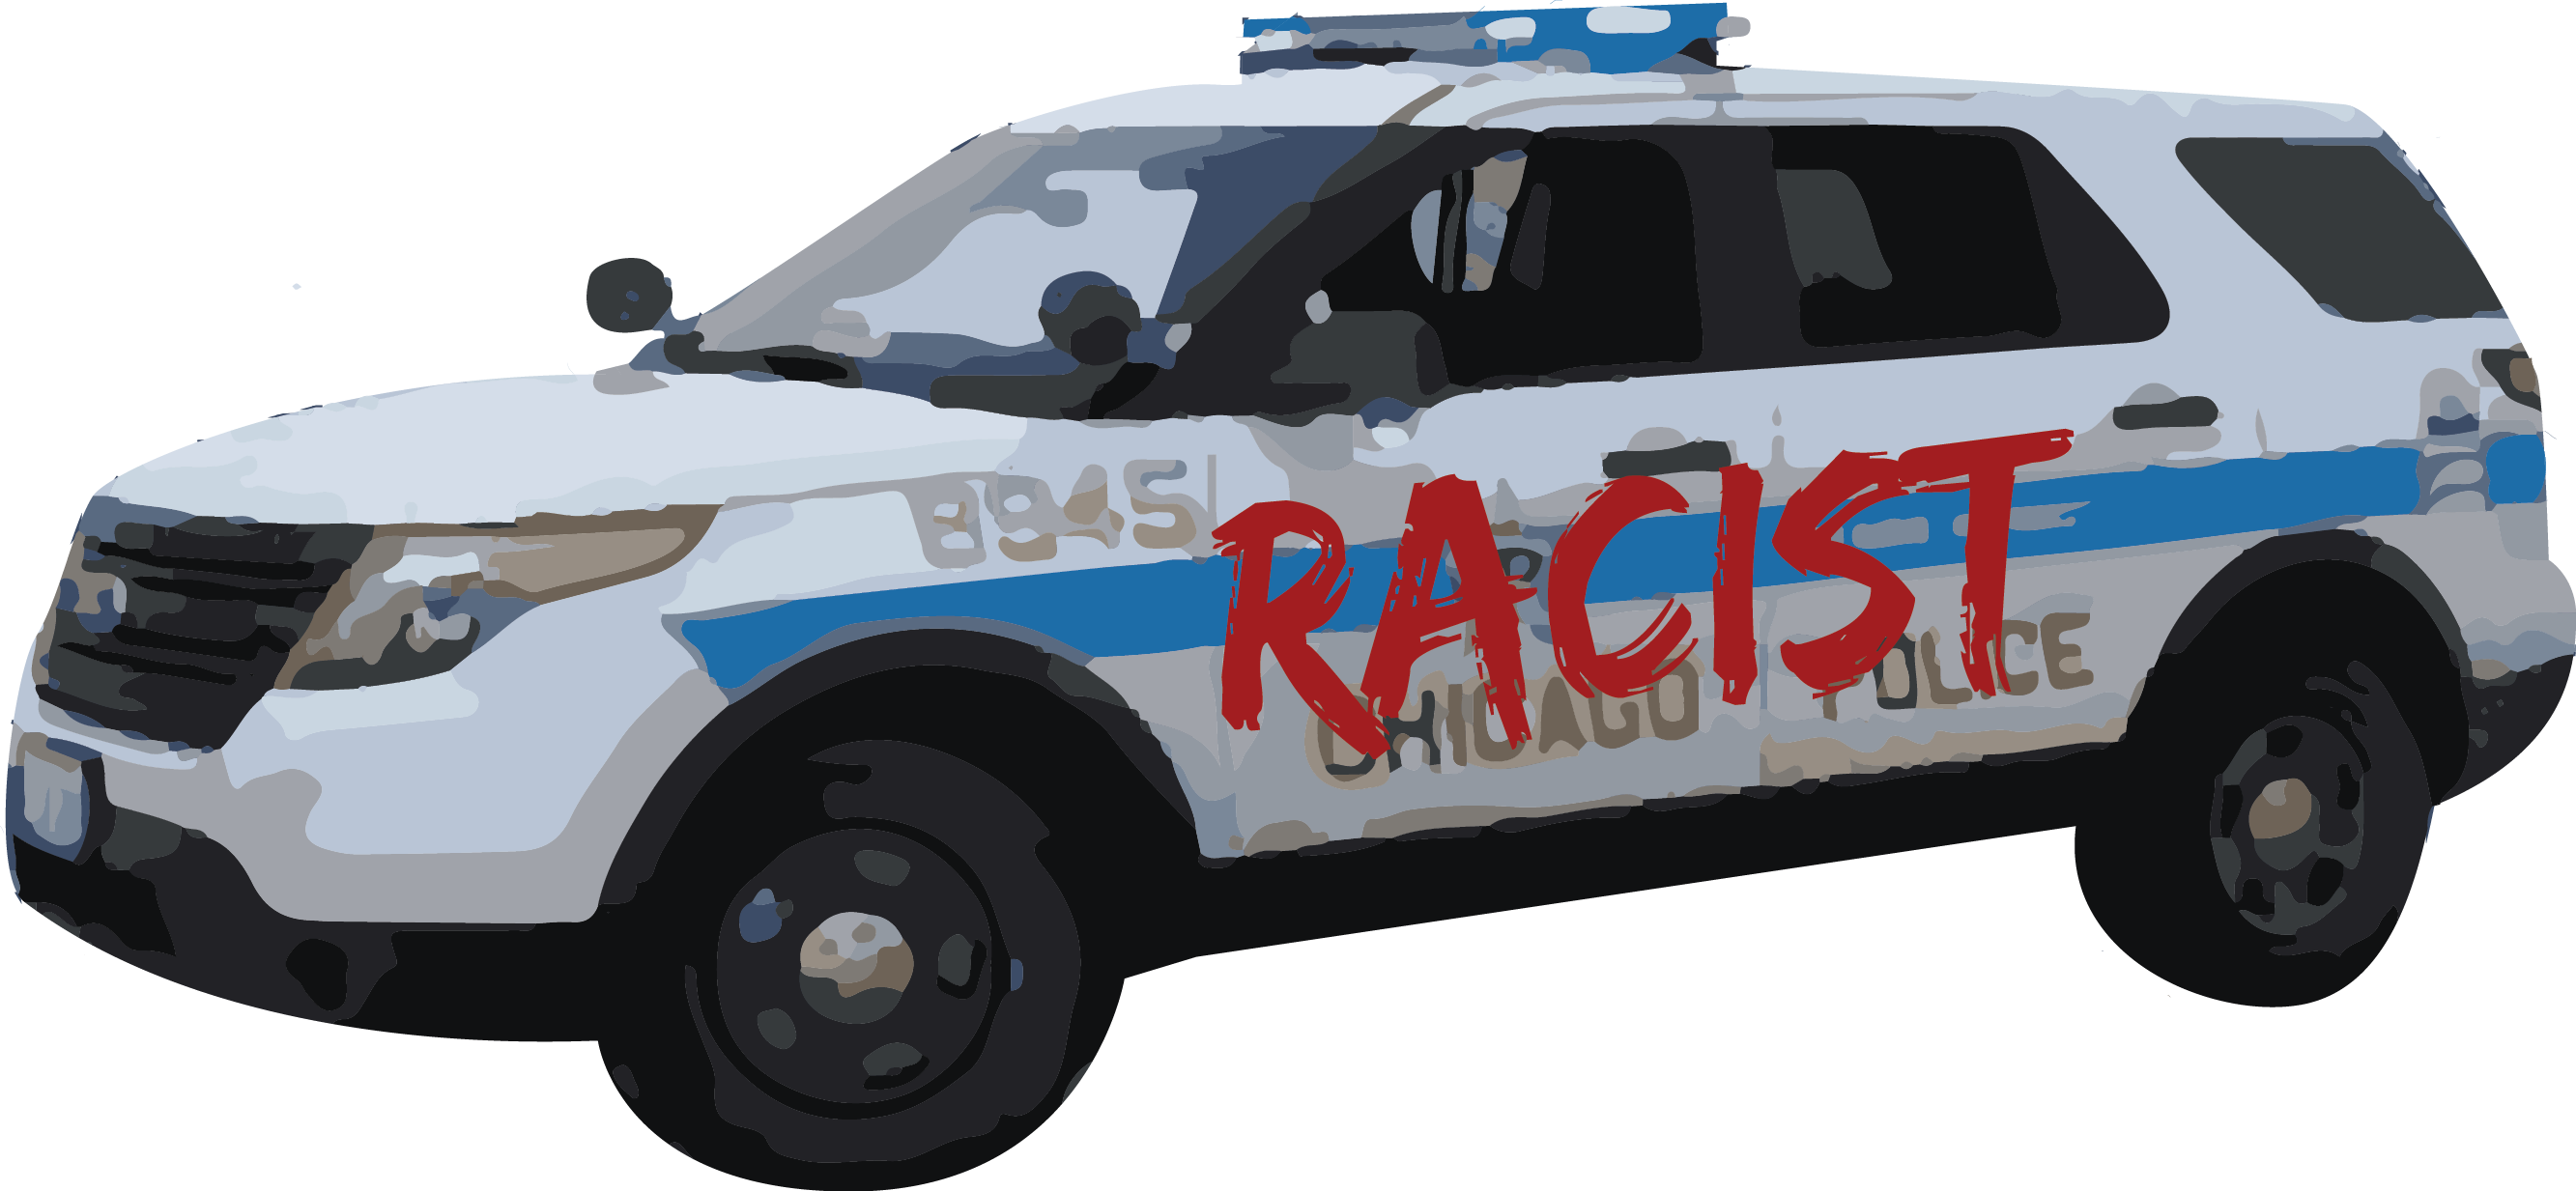 report reveals racism